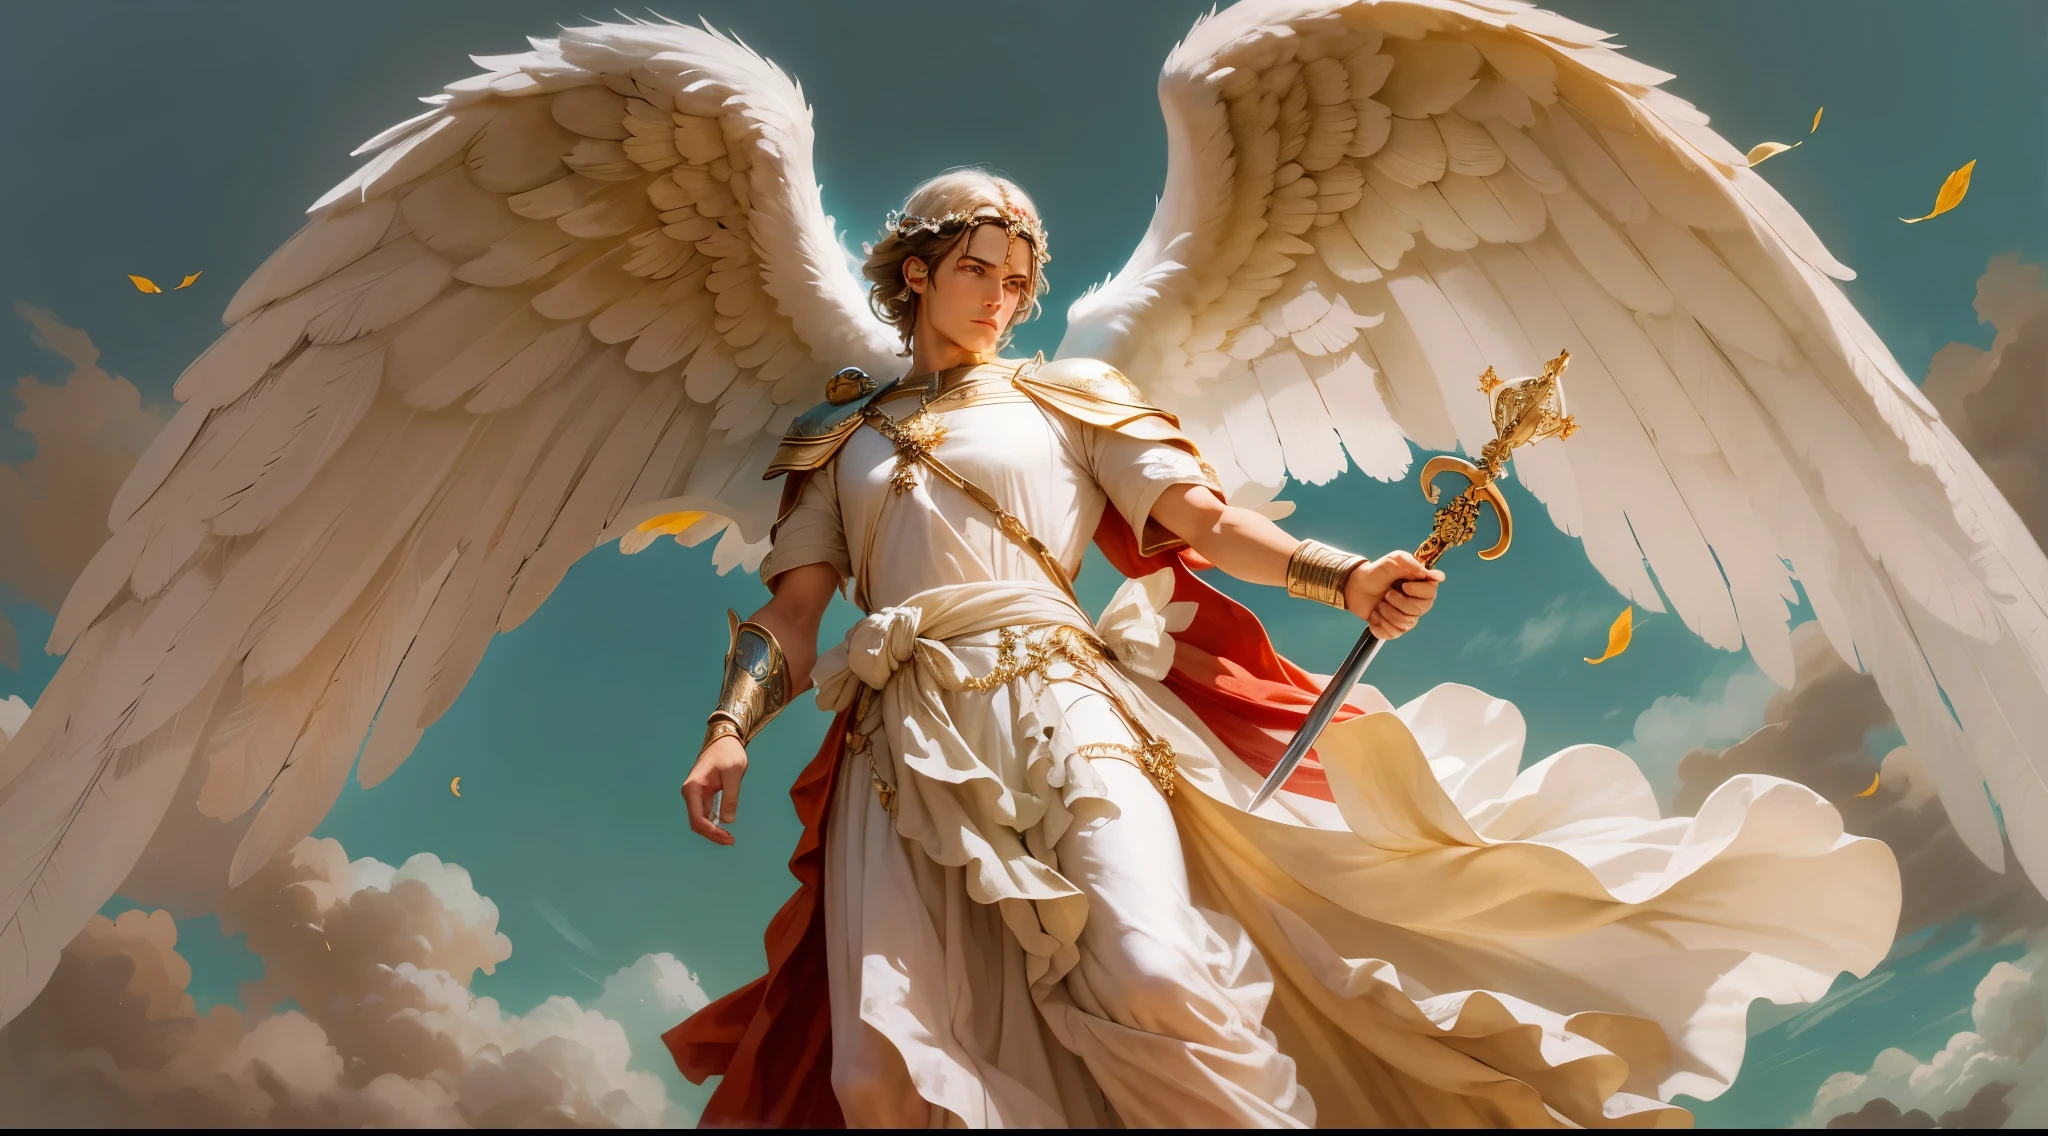 右手に攻撃姿勢を取った大きく長い剣を持つ天使の男性の画像のクローズアップ, もう一方の左手には秤を持っている, 地面を見つめるローマ兵に扮した天使, 大きな翼を持つ大天使の男, 幸運の天使, 完璧, 現実的, 聖書の舞台, 聖書の楽園の舞台, 超リアルな太陽と雲, 花とキャンドル, 天国の光り輝く大天使, 色とりどりの花, 火のついたキャンドル, 白と赤の服, グロープラグ